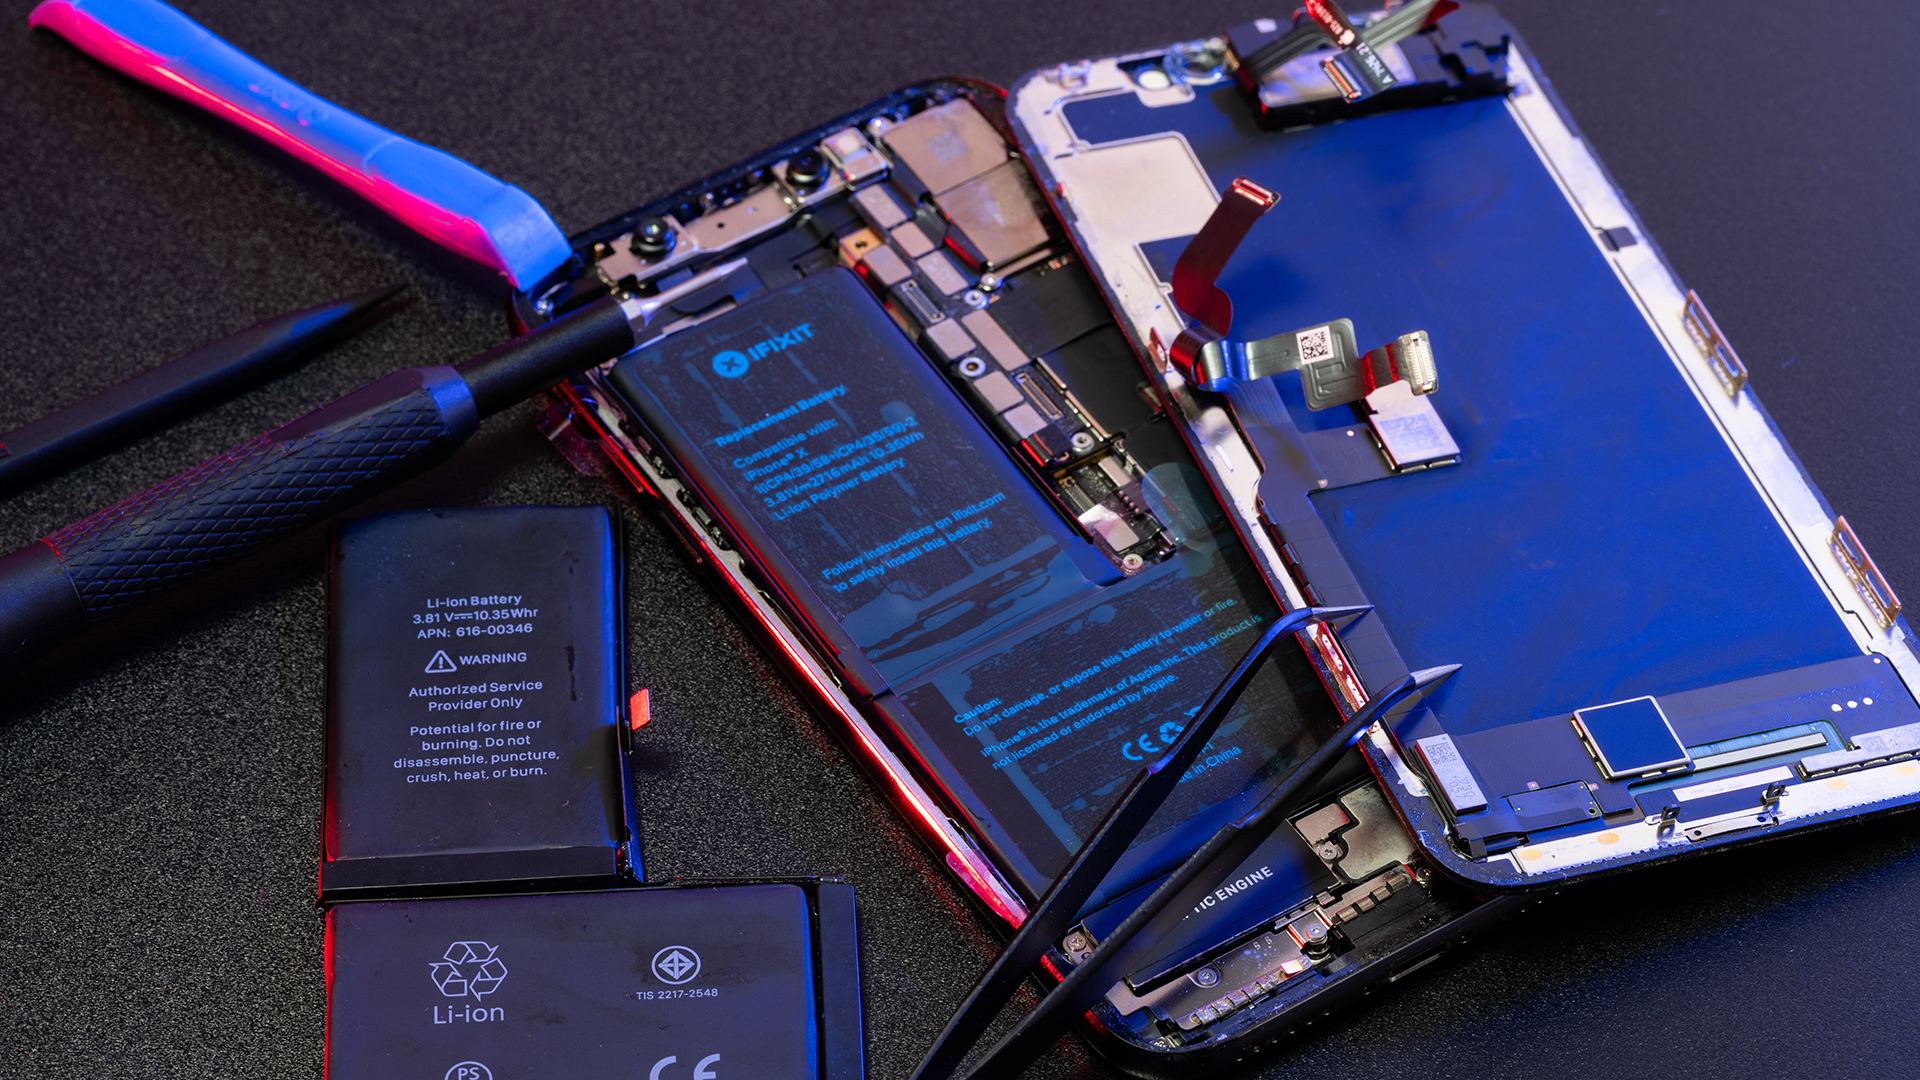 Apple ima patent za novu iPhone bateriju koja duže traje bez povećanja njenih dimenzija -